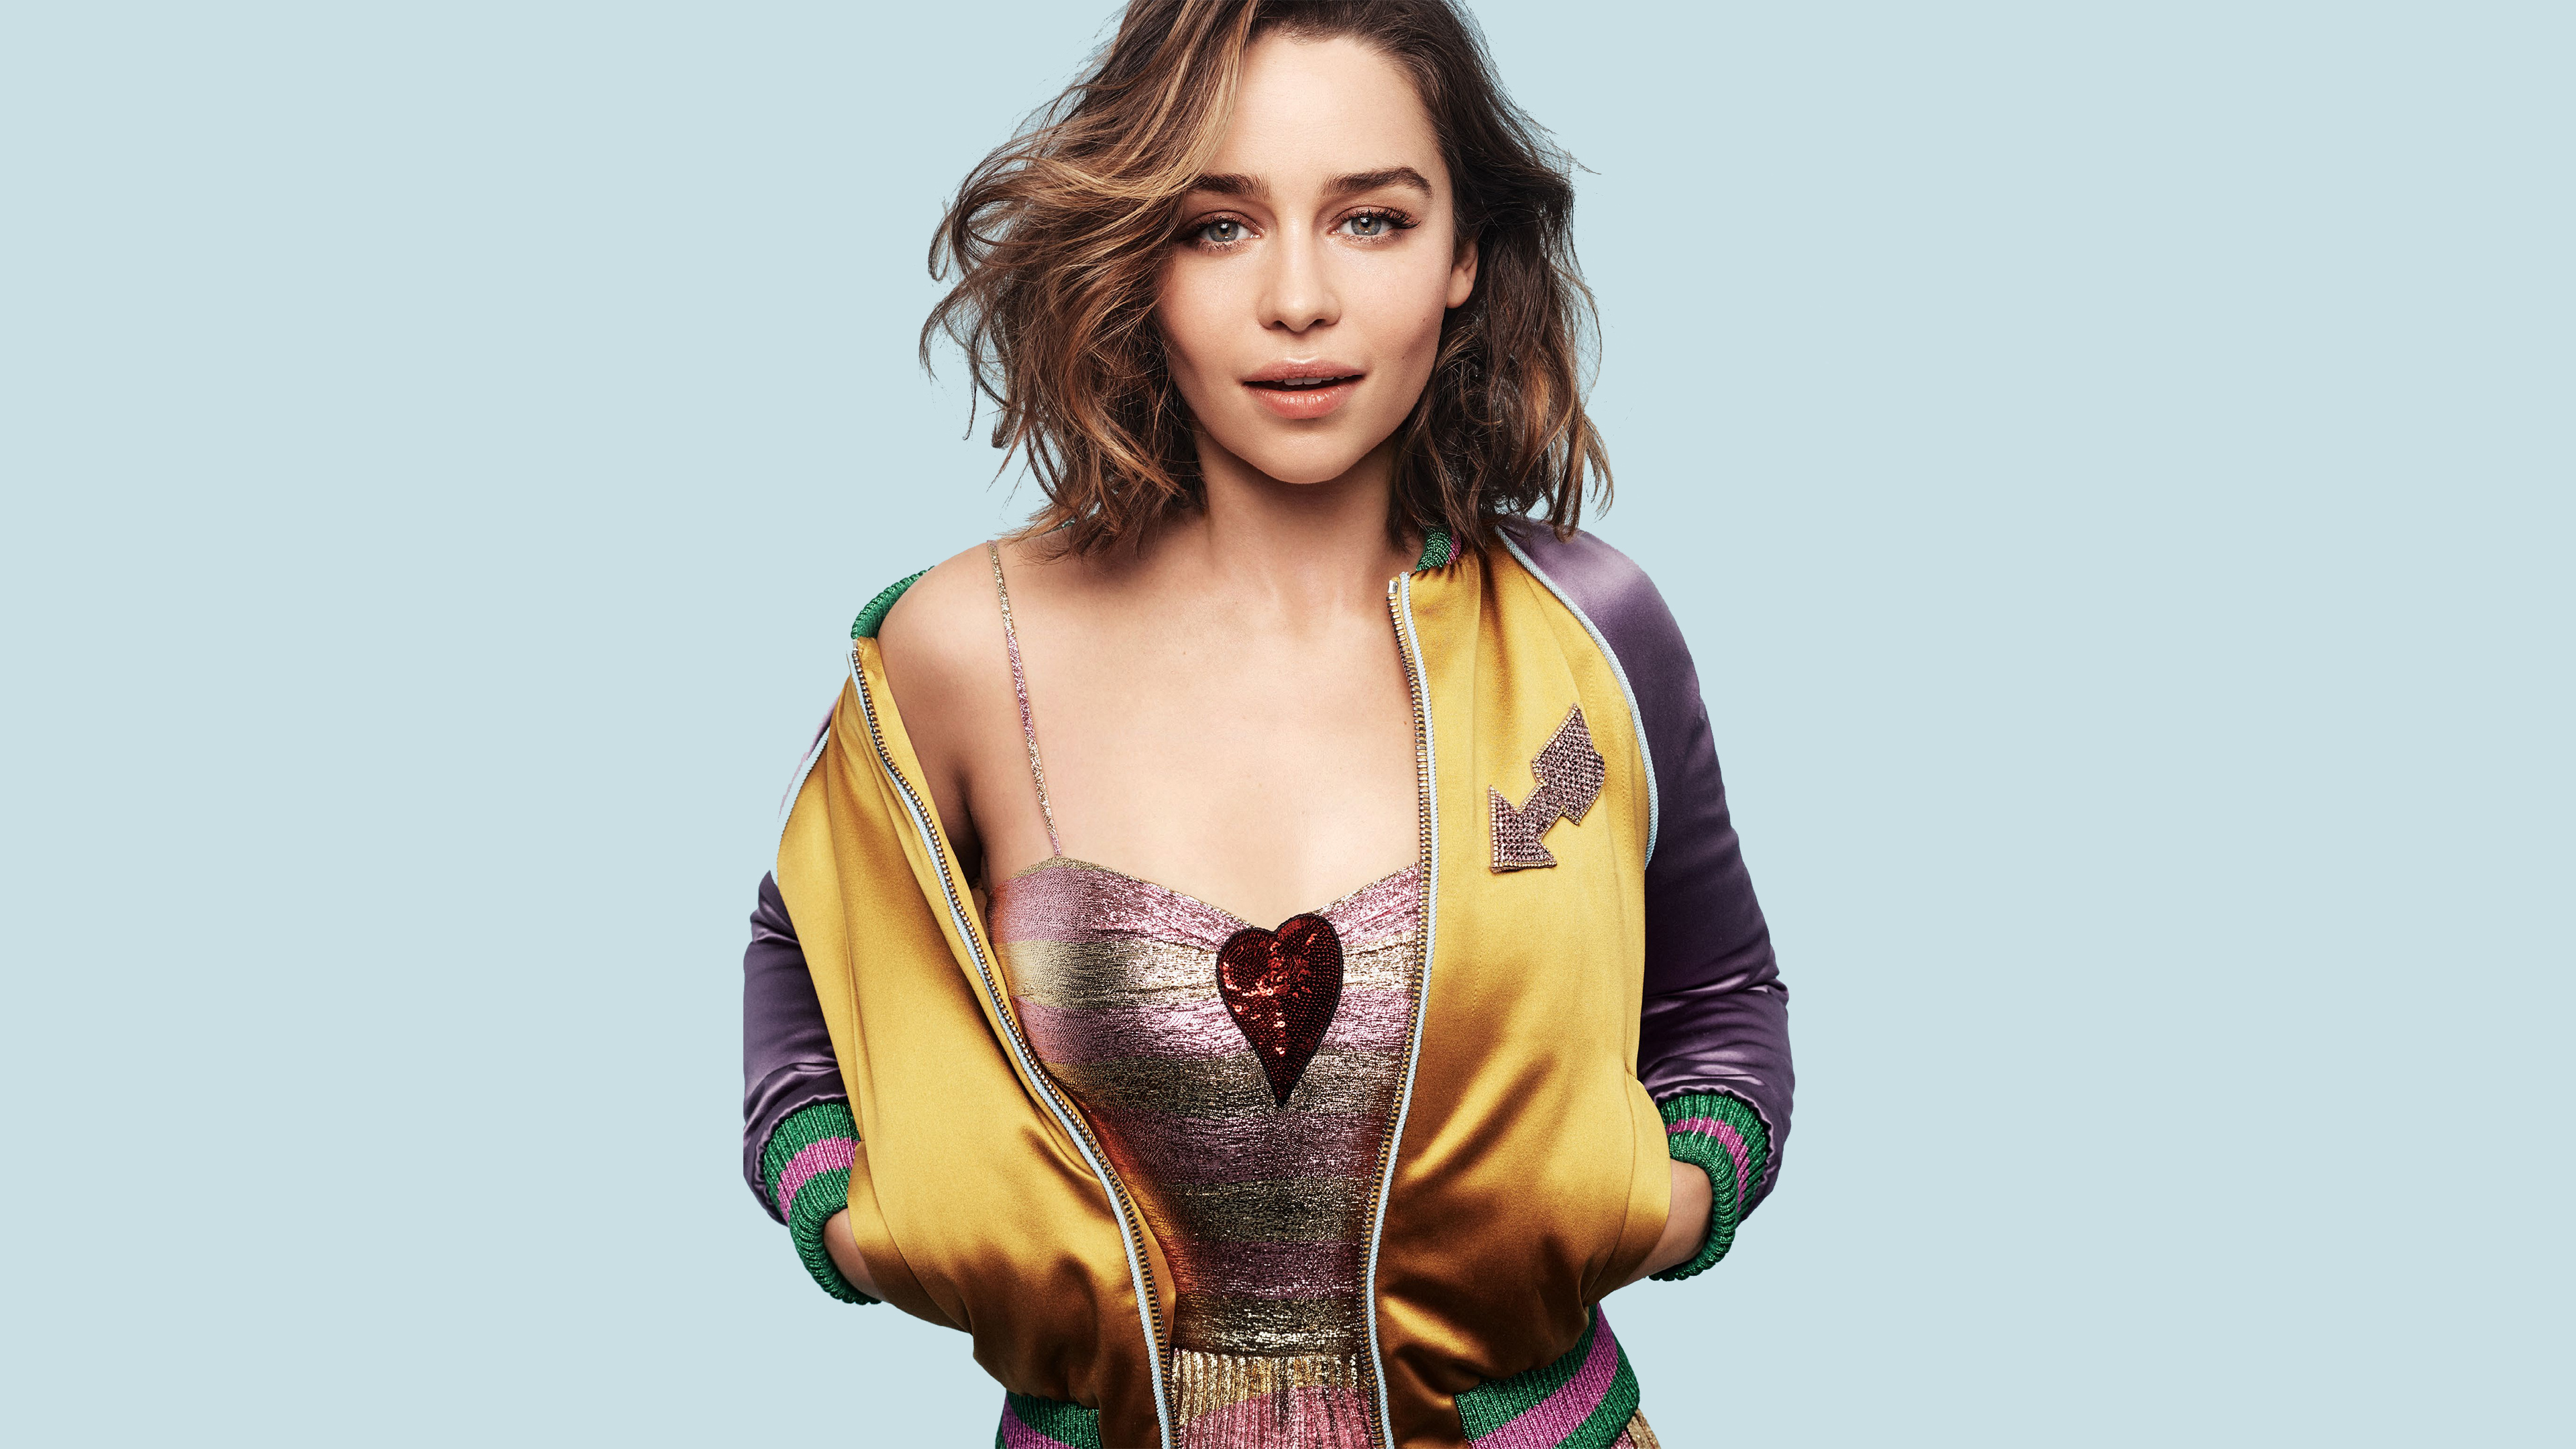 Emilia Clarke 4K Wallpapers